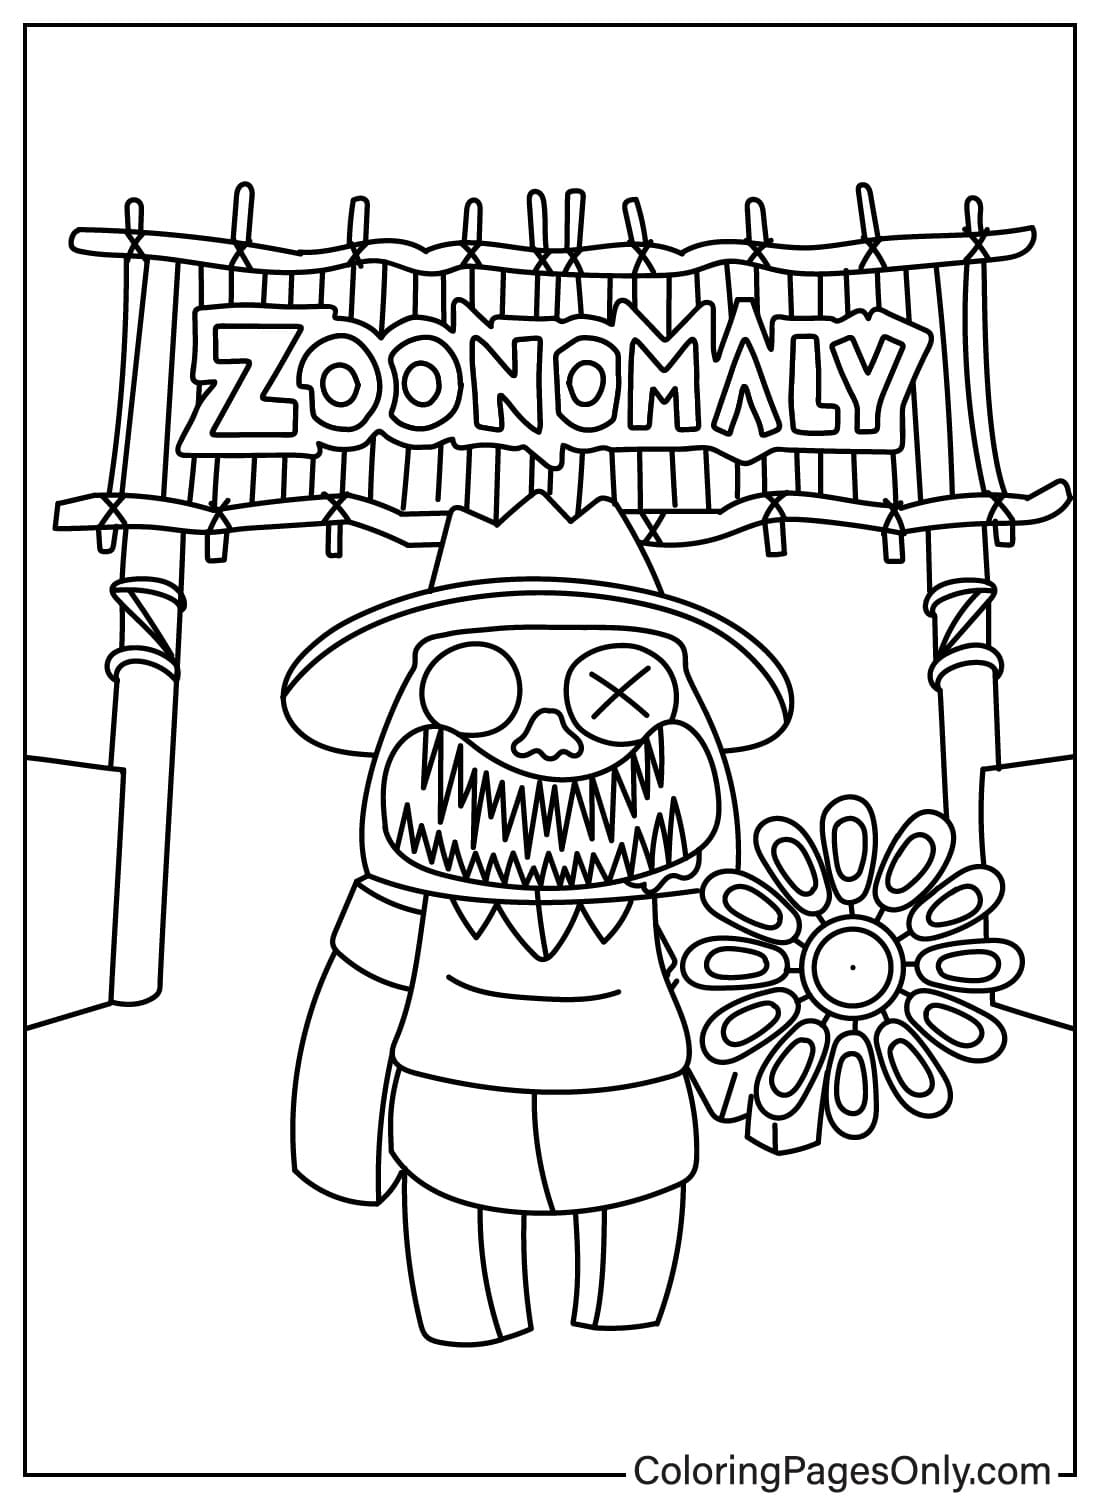 Páginas para colorir de Zoonomaly para baixar em Zoonomaly